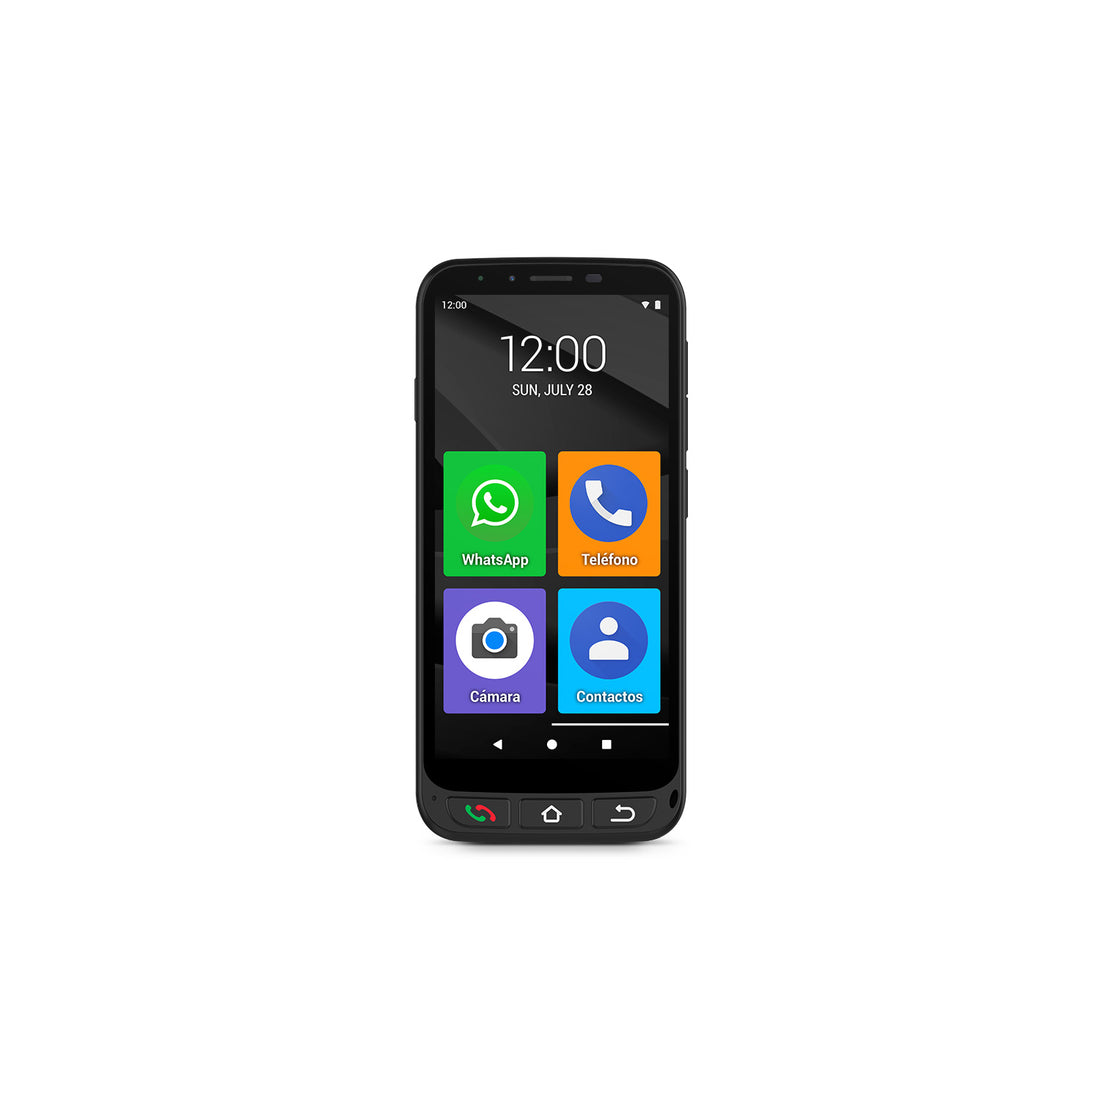 SPC Zeus 4G Pro: El AUTENTICO SMARTPHONE para personas mayores